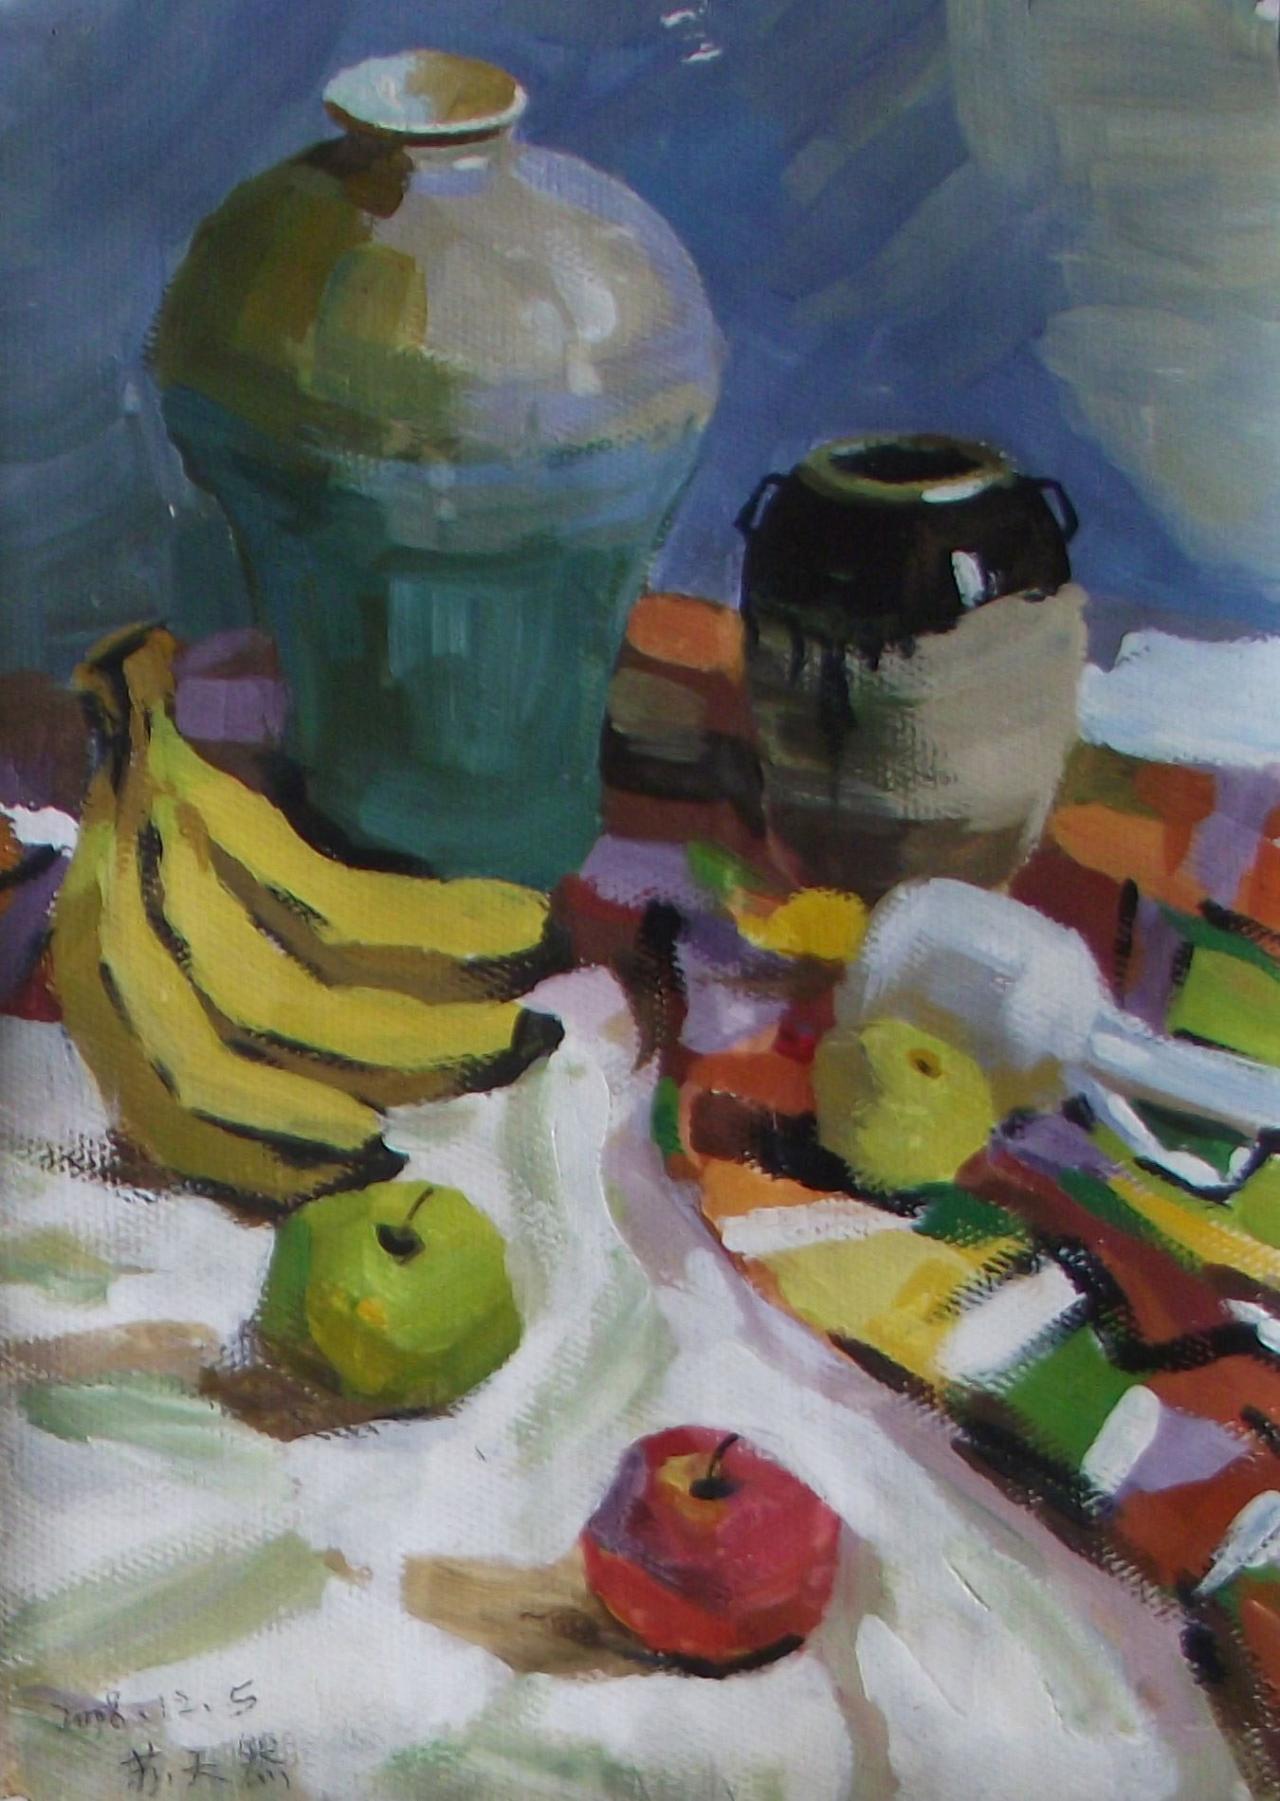 坛子、香蕉、苹果等静物水粉 苏天然画